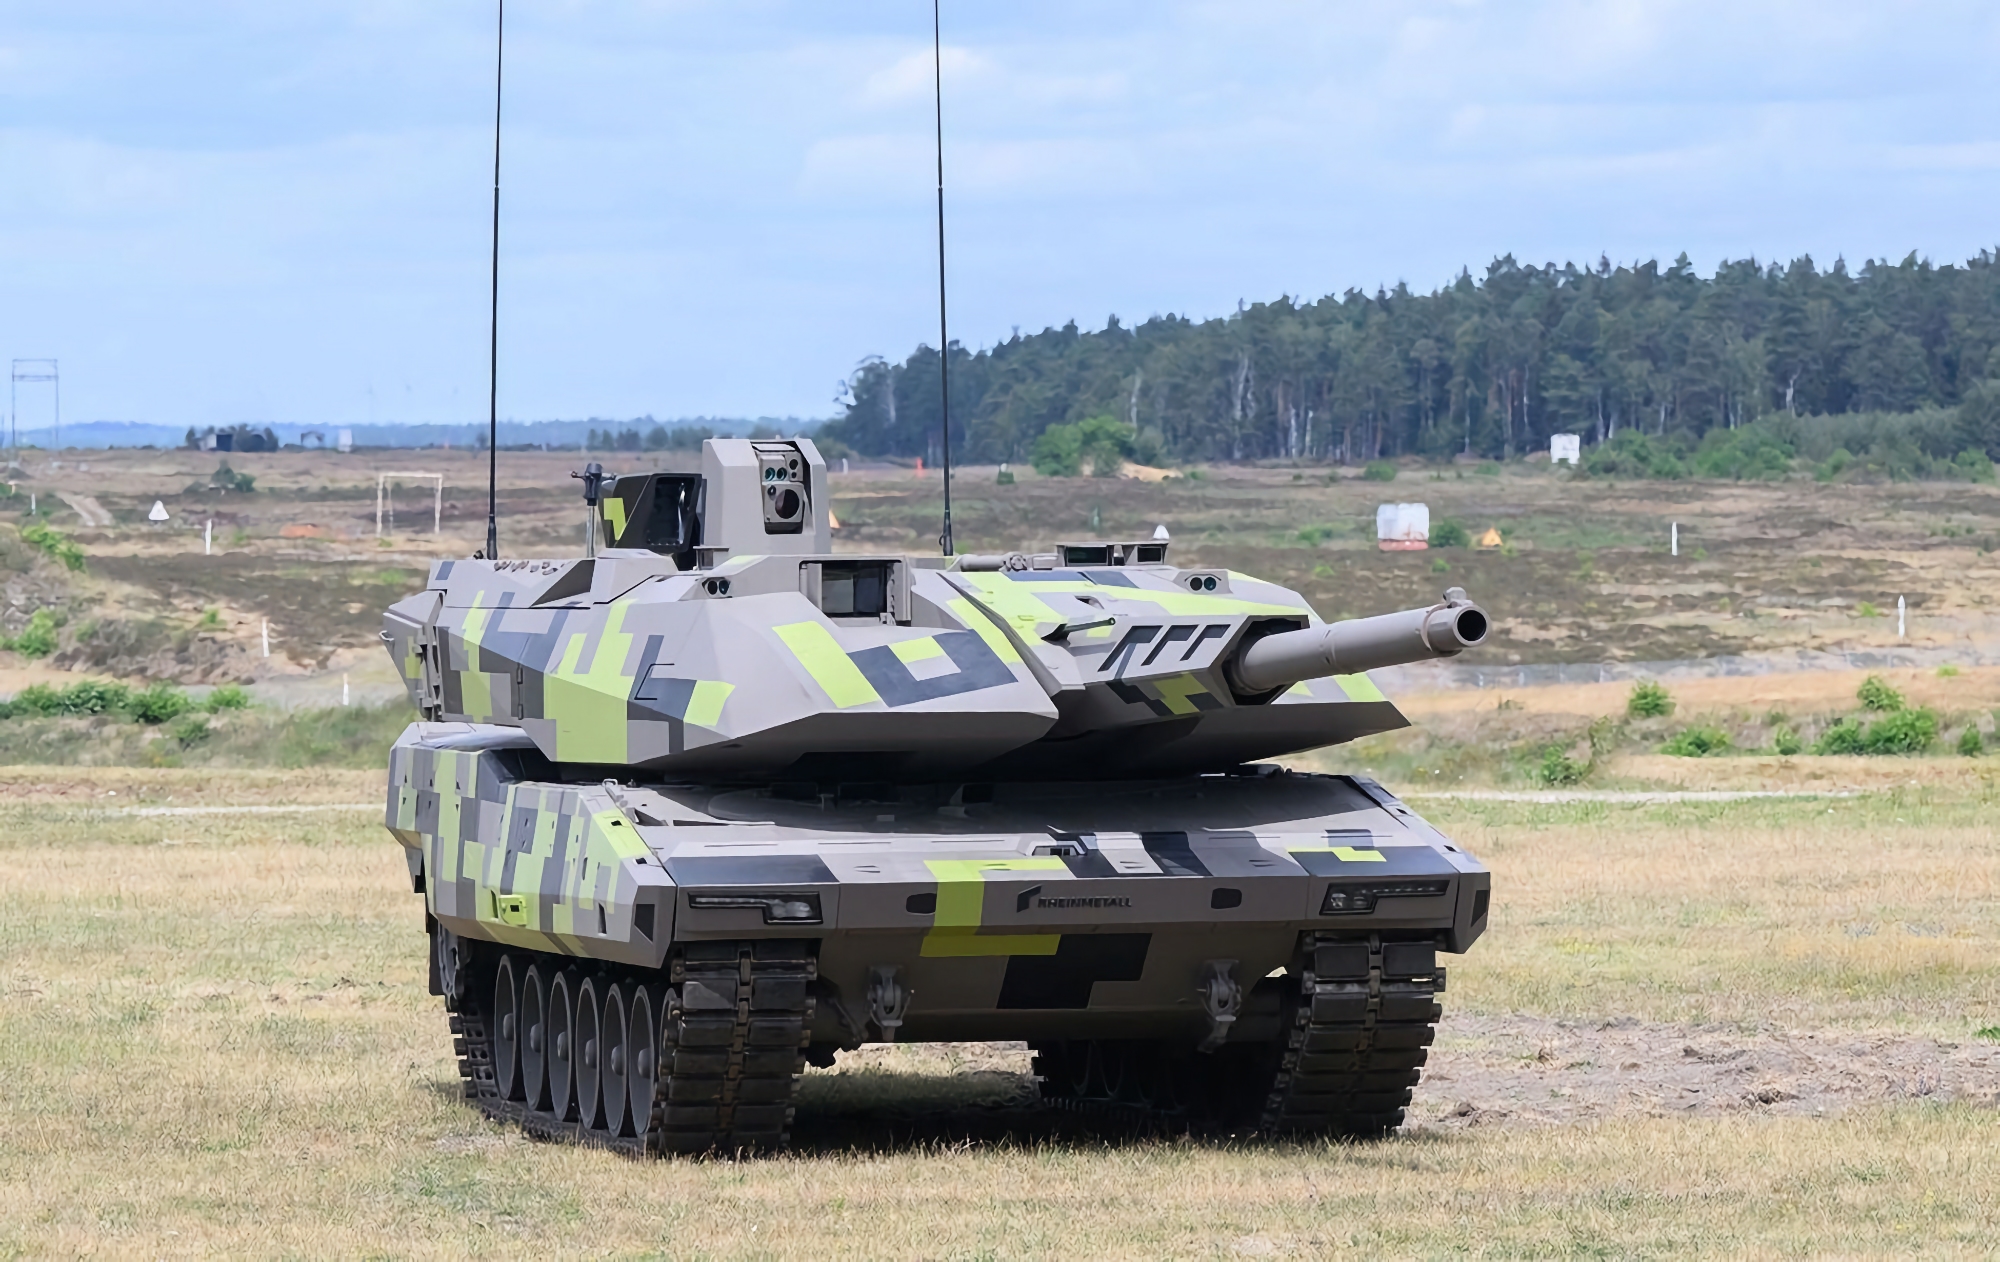 Rheinmetall planea producir municiones, tanques Panther KF51 y sistemas de defensa antiaérea en Ucrania